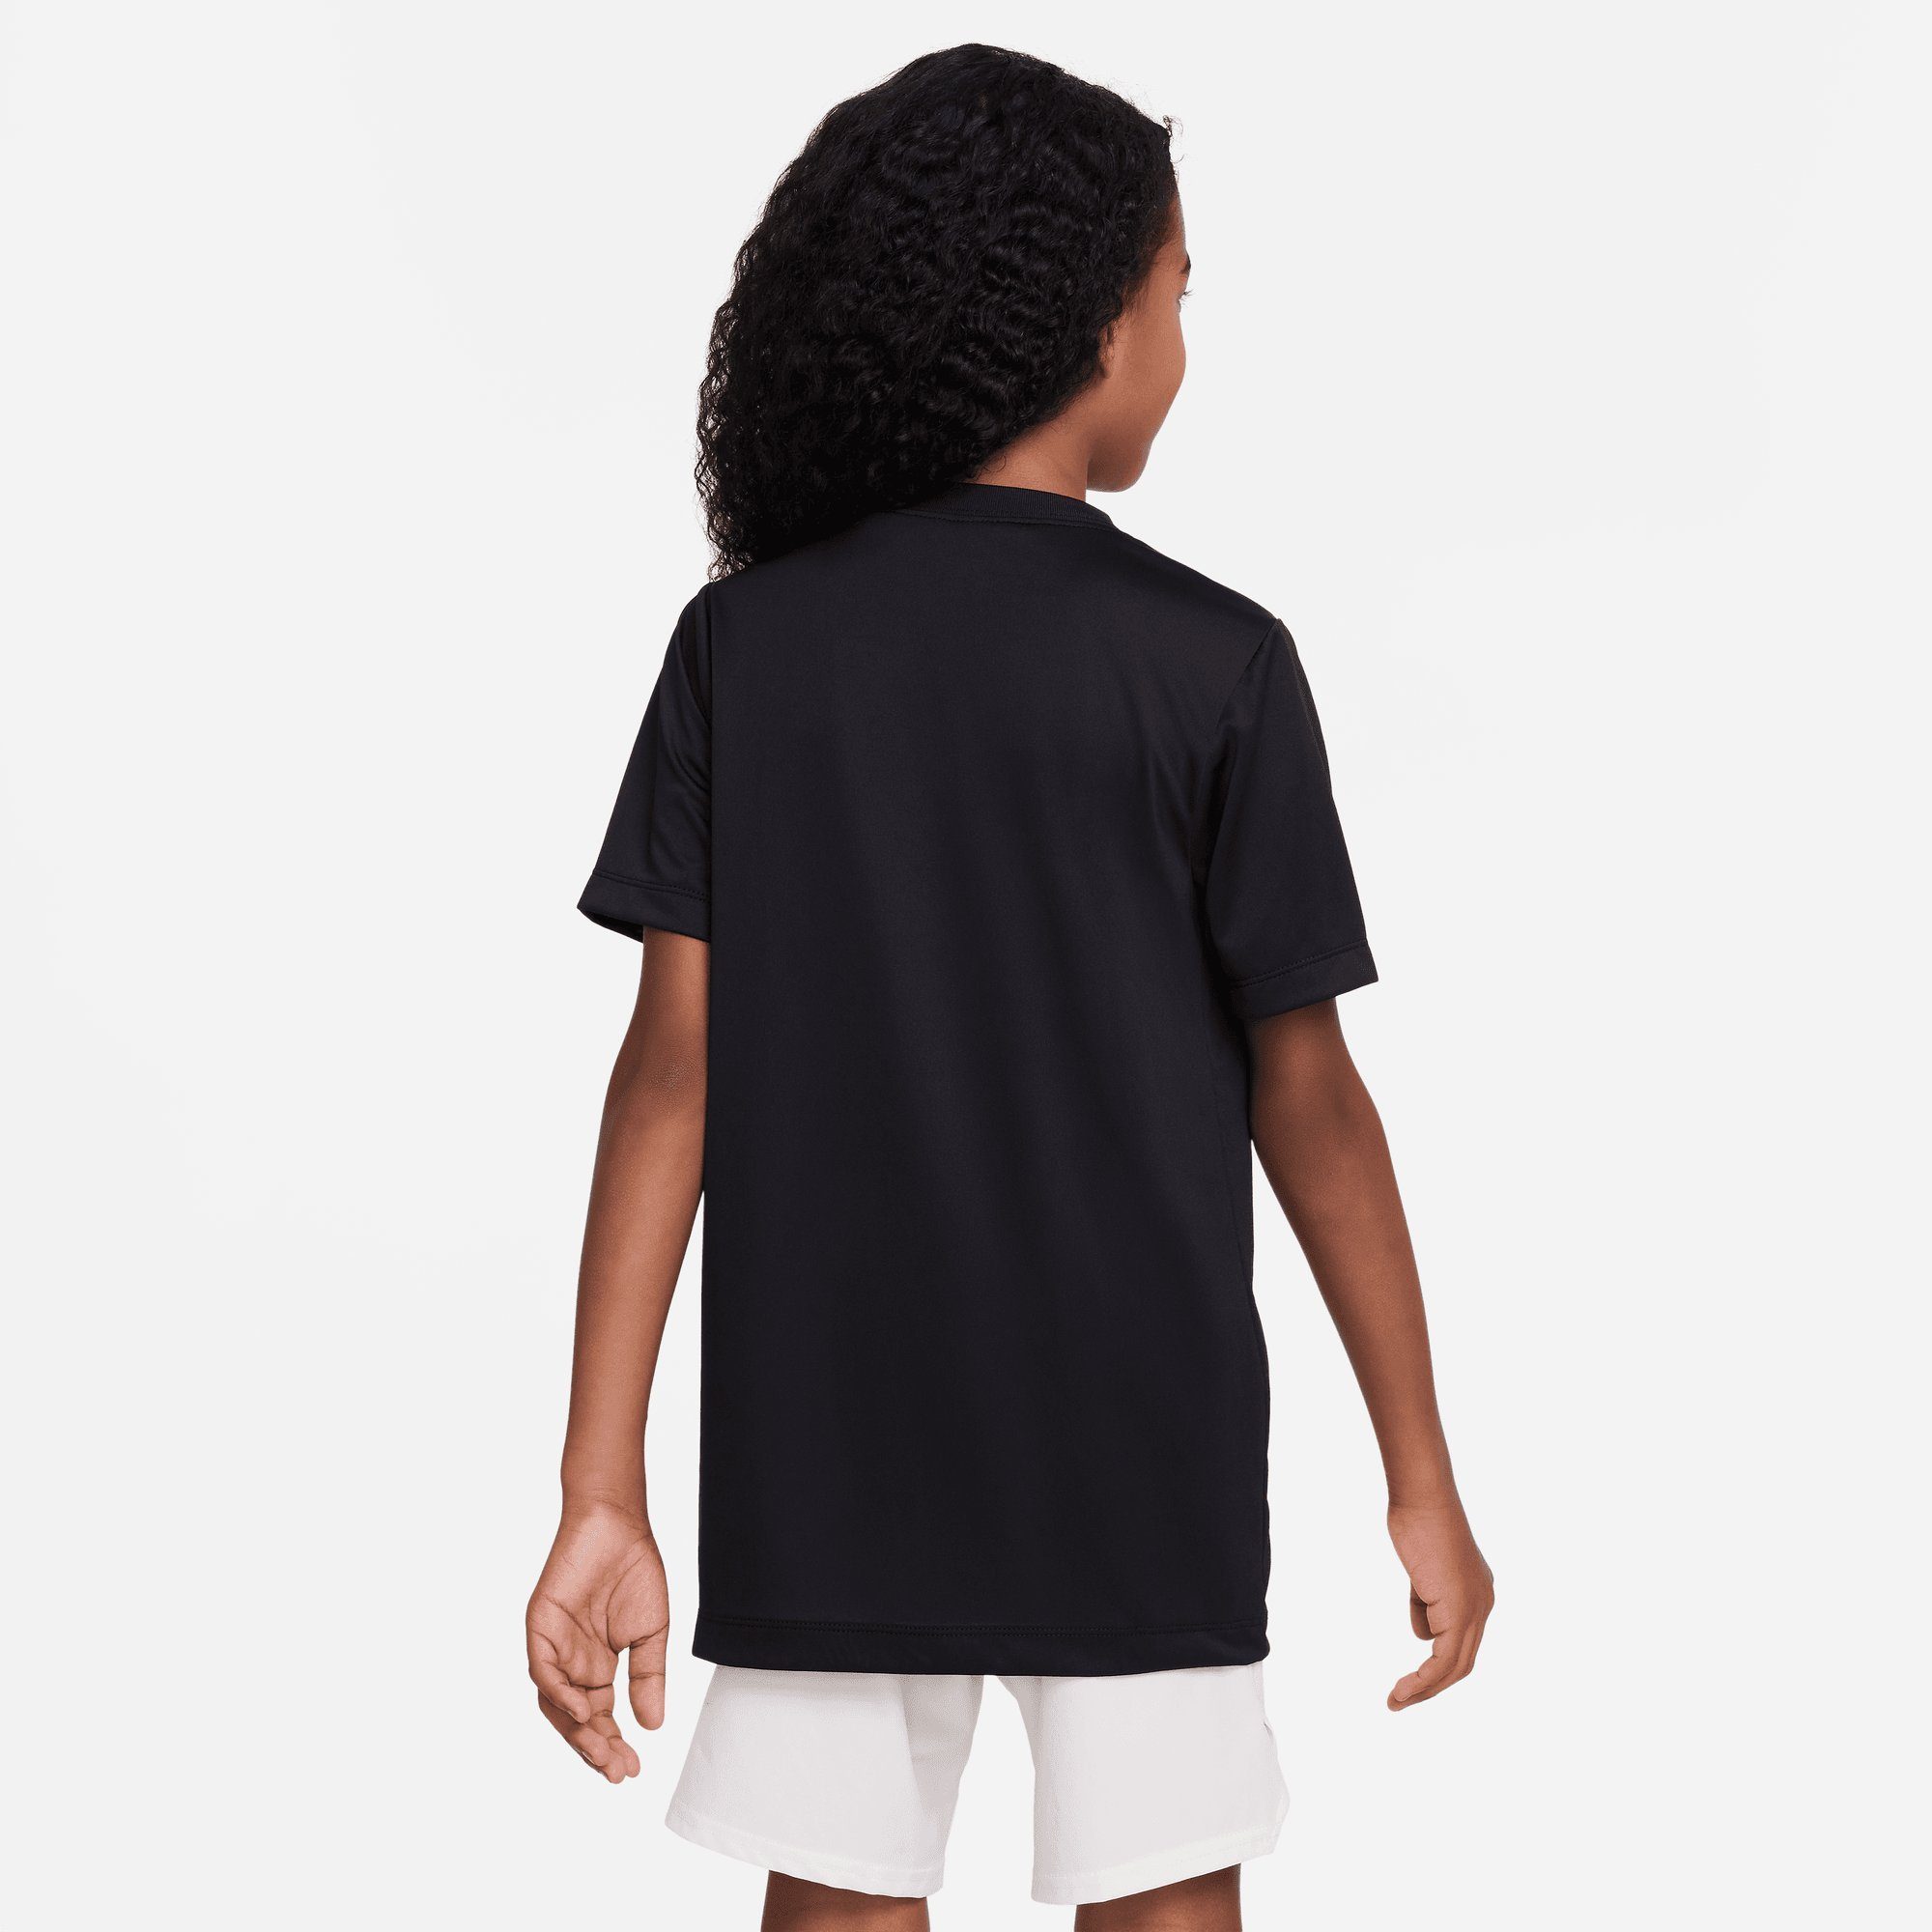 KIDS' T-SHIRT TRAINING Sportswear DRI-FIT BLACK Nike (BOYS) BIG T-Shirt